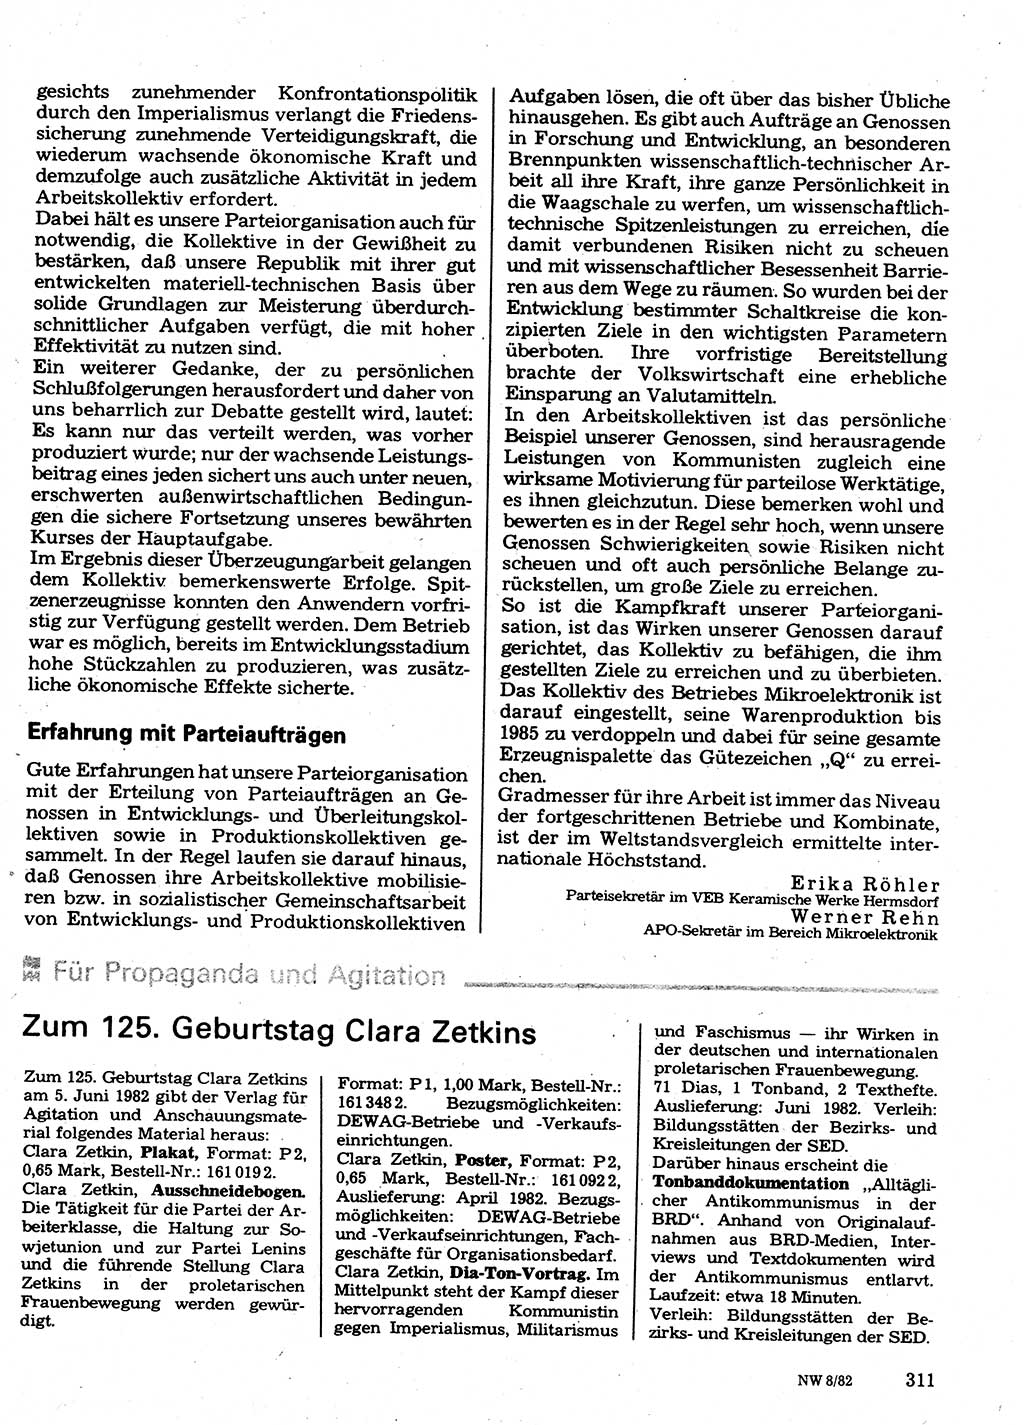 Neuer Weg (NW), Organ des Zentralkomitees (ZK) der SED (Sozialistische Einheitspartei Deutschlands) für Fragen des Parteilebens, 37. Jahrgang [Deutsche Demokratische Republik (DDR)] 1982, Seite 311 (NW ZK SED DDR 1982, S. 311)